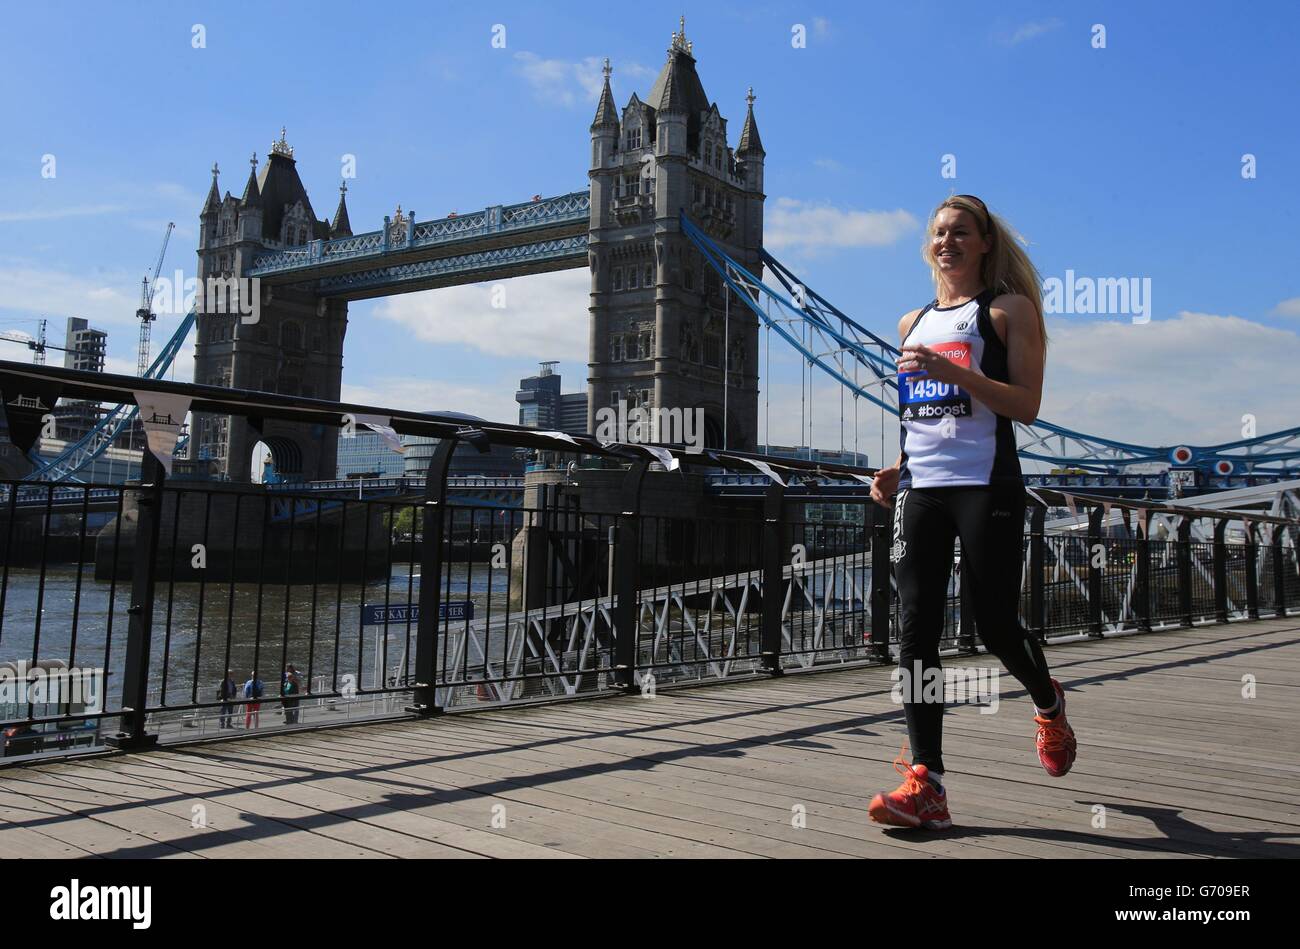 Athlétisme - Virgin London Marathon 2014 - célébrités Photocall - Tower Bridge.Amy Guy pendant la photo des célébrités à Tower Bridge, Londres. Banque D'Images